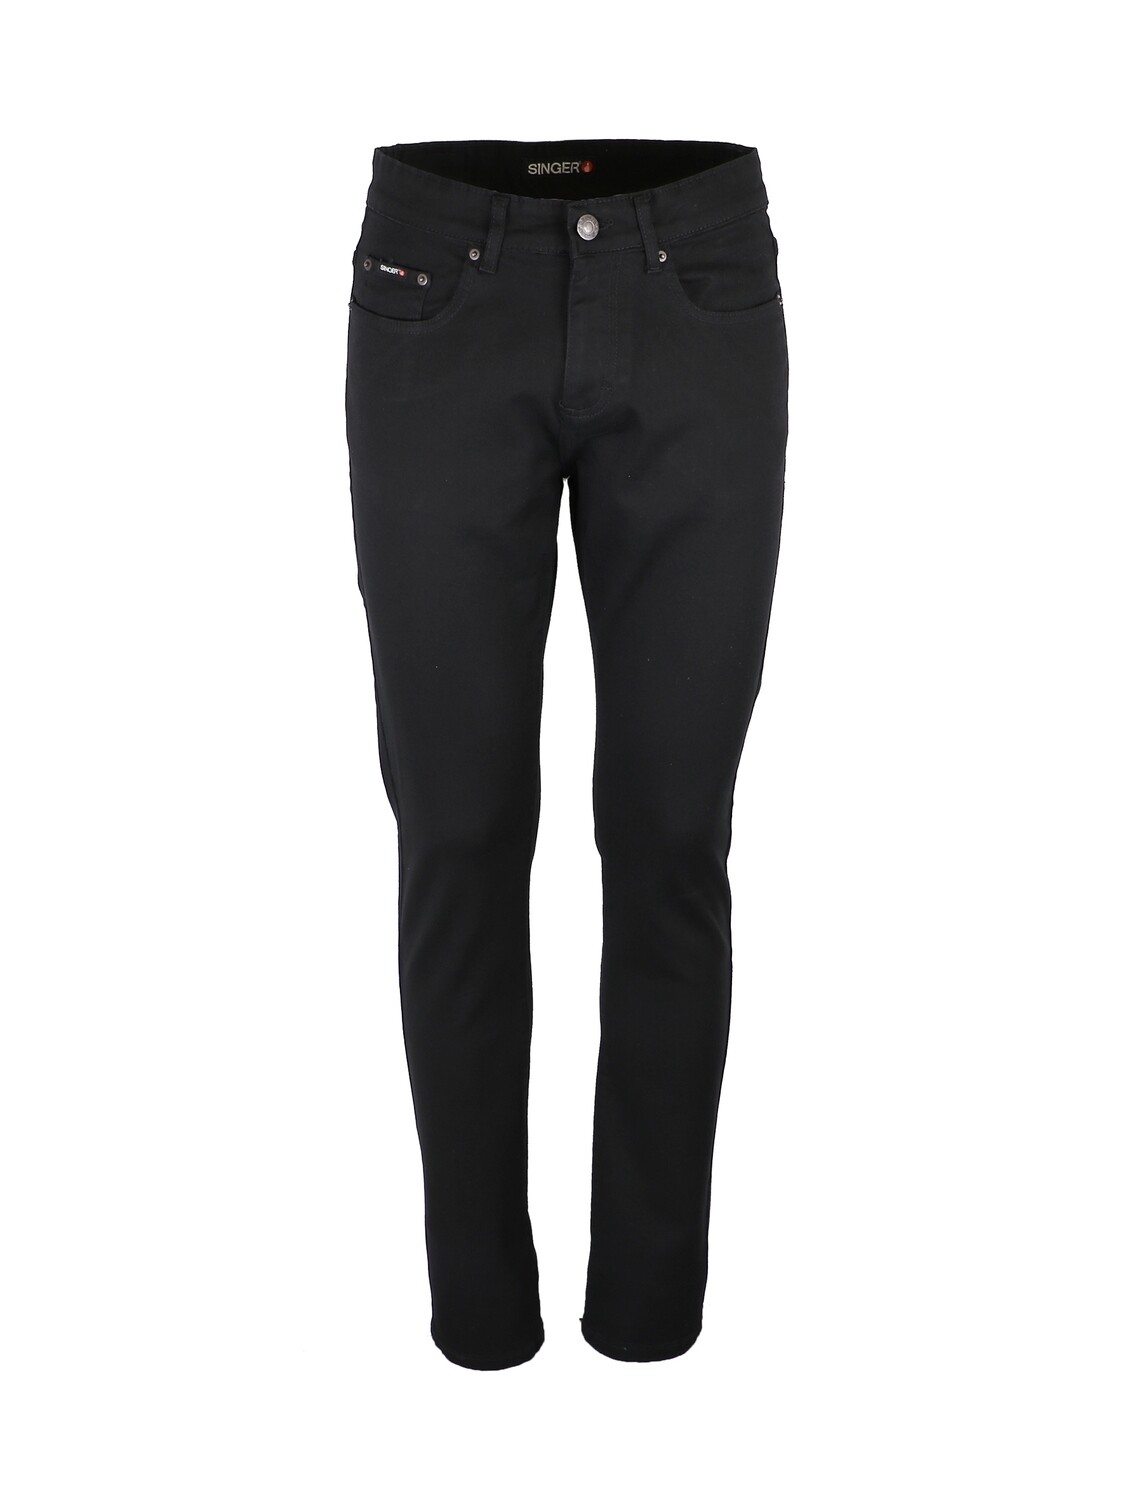 Jeans 98% Coton, 2% Elasthane. Coloris Noir